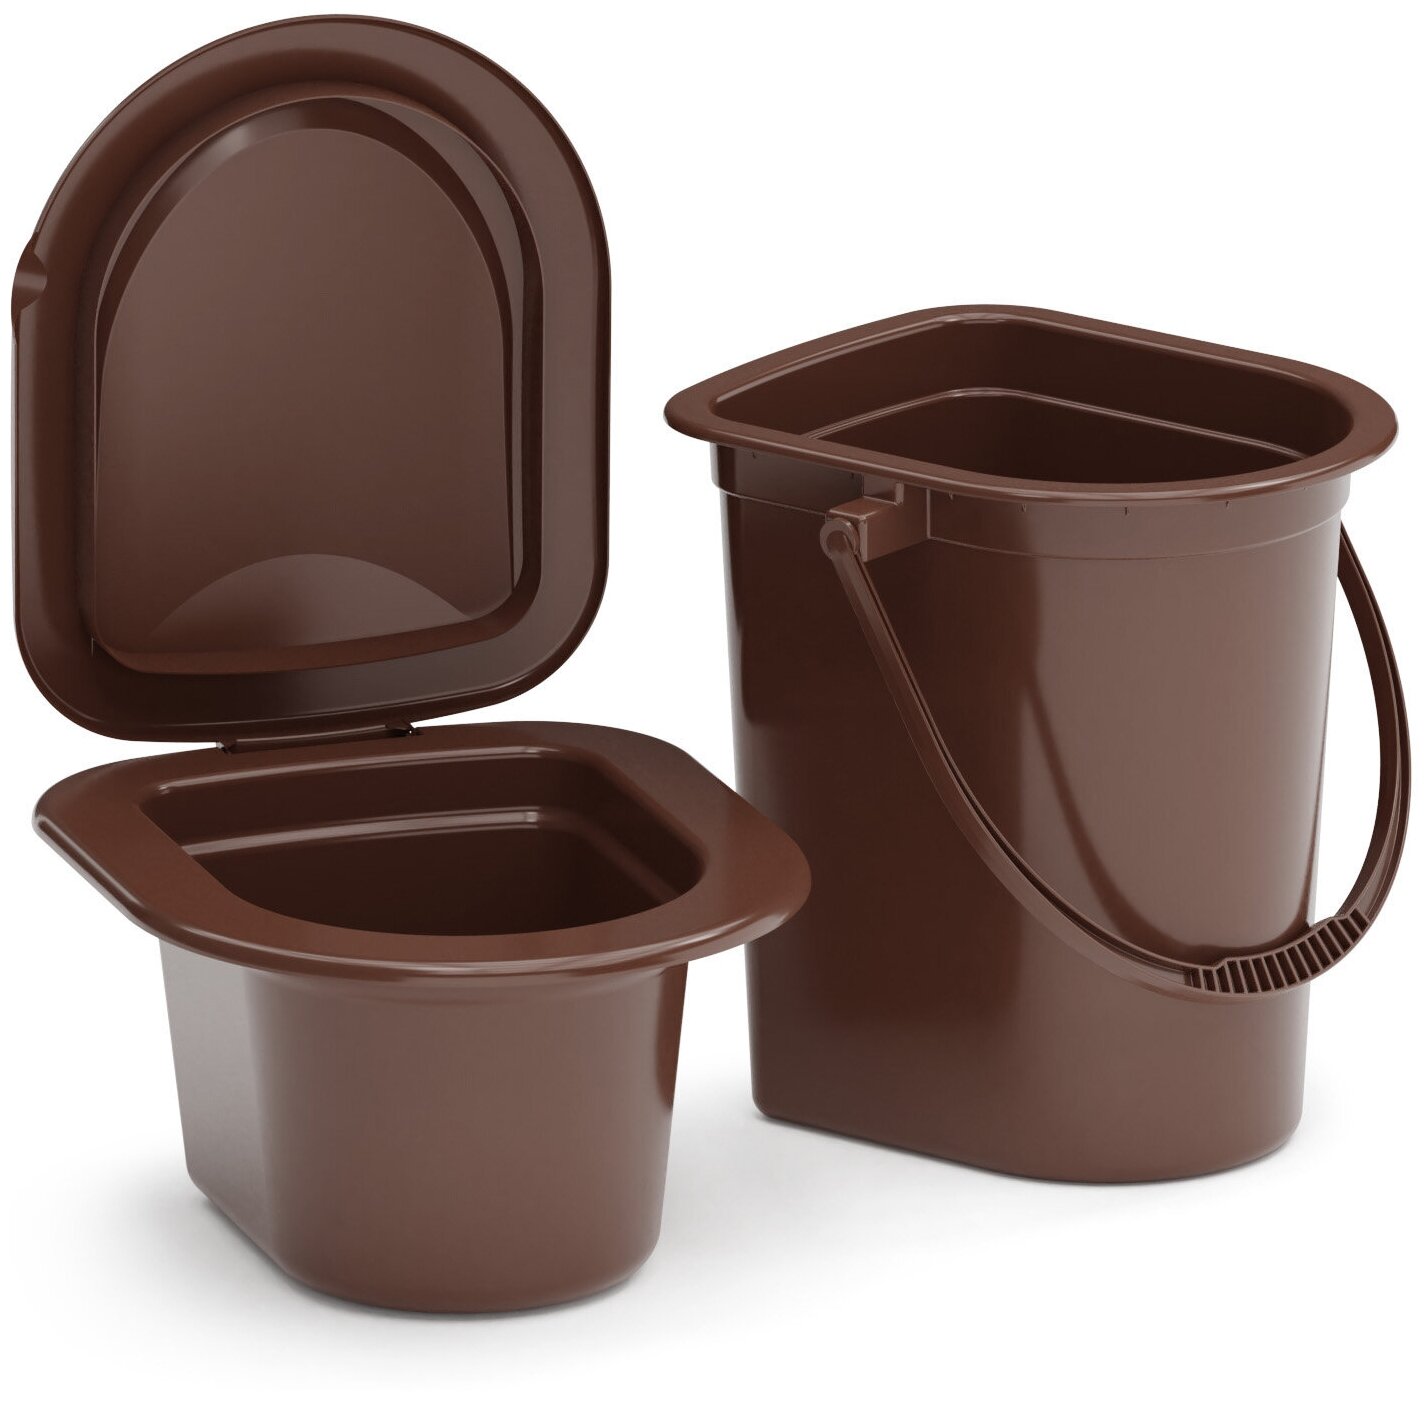 Хозяйственное ведро-туалет со съемным горшком 17л Альтернатива М3051 (цвет коричневый)